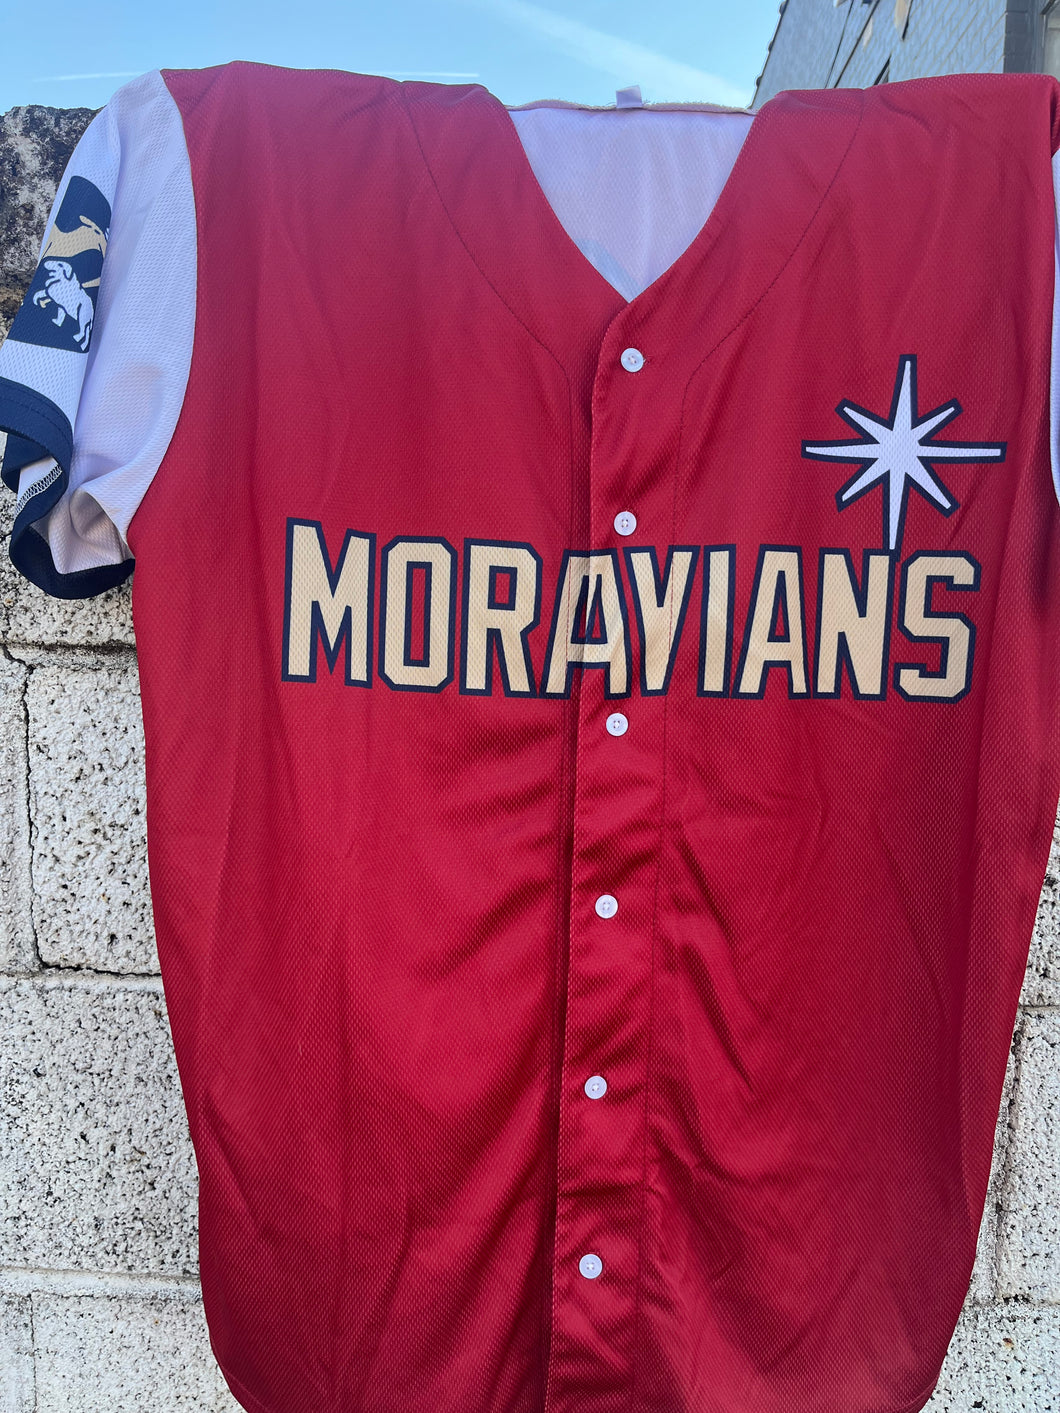 Moravians game-worn jersey